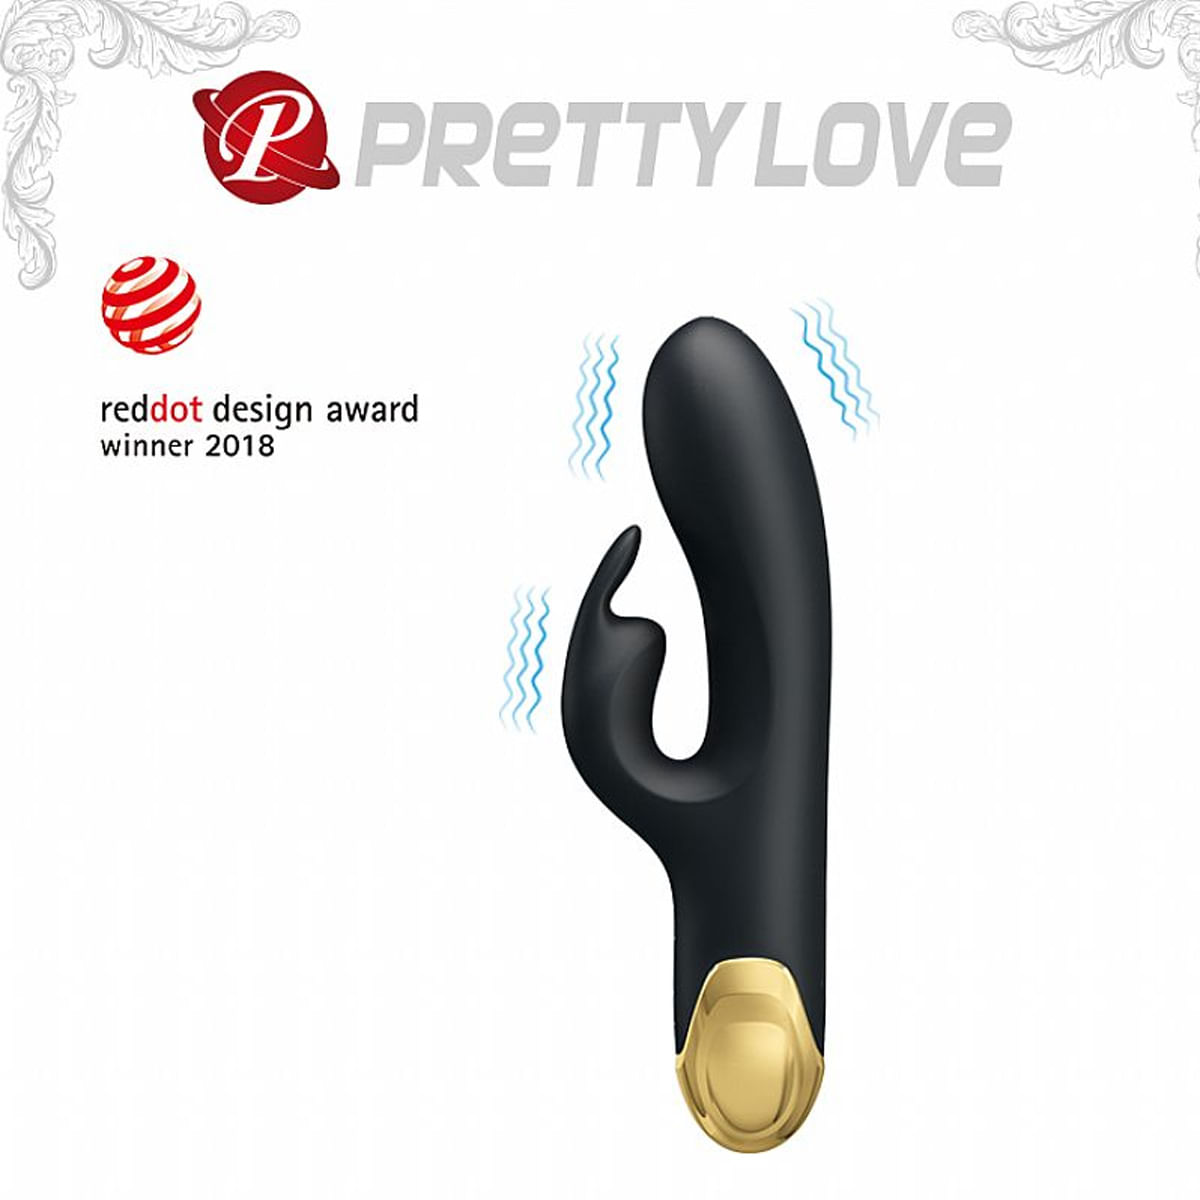 Pretty Love Double Royal Pleasure Vibrador com 7 Modos de Vibração 24k Gold Sexy Import